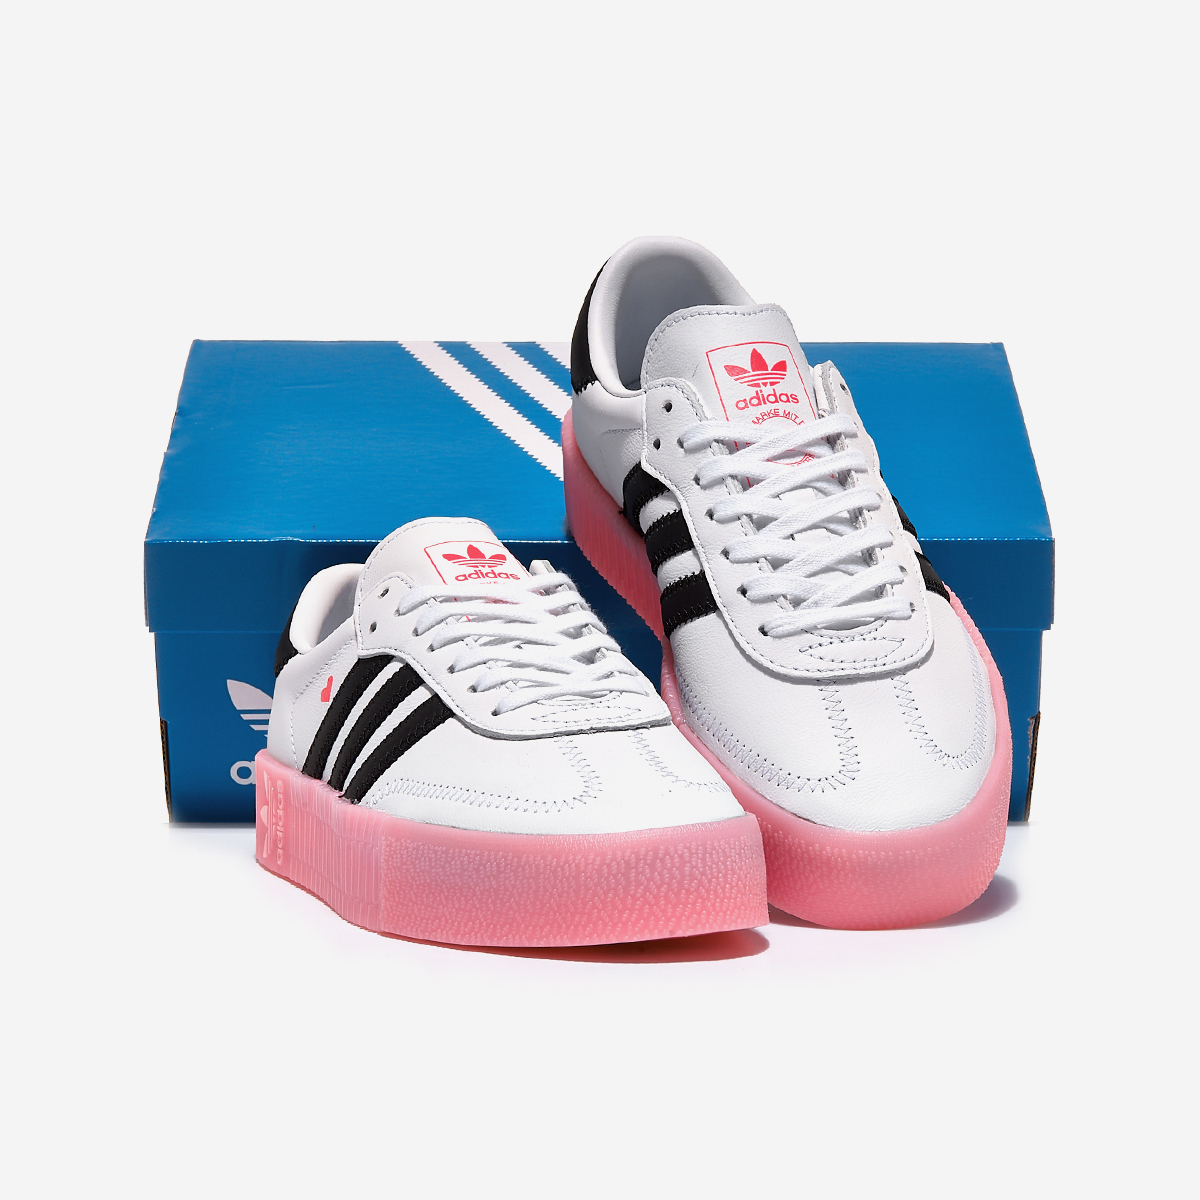 Адидас самба розовые. Adidas Samba Rose ef4965. Sambarose adidas Valentine. Adidas Samba Rose Valentine (w). Adidas Samba Pink.